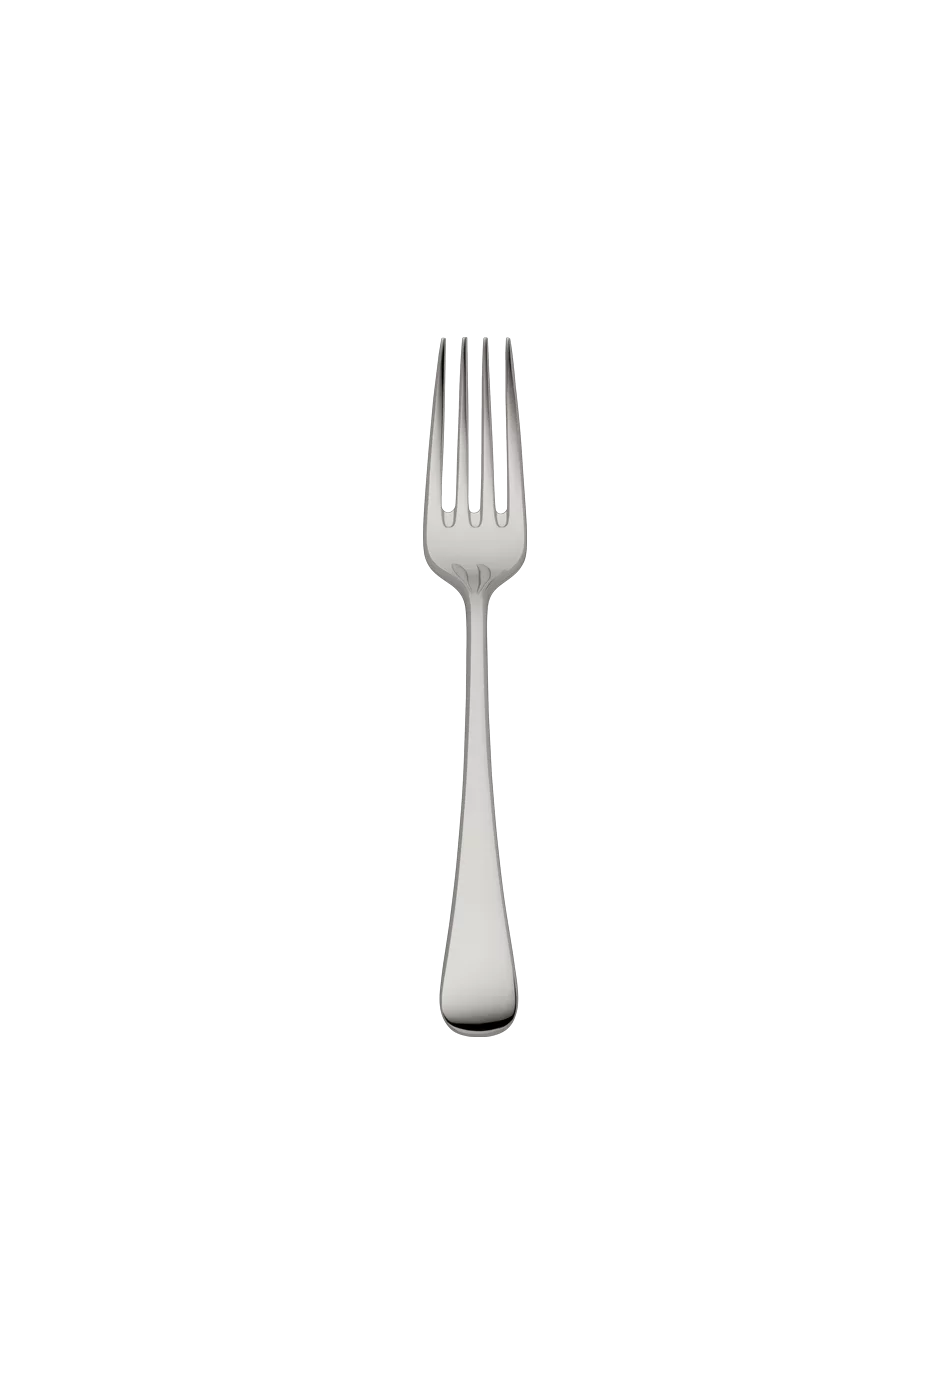 Como Children's Fork (18/8 stainless steel)